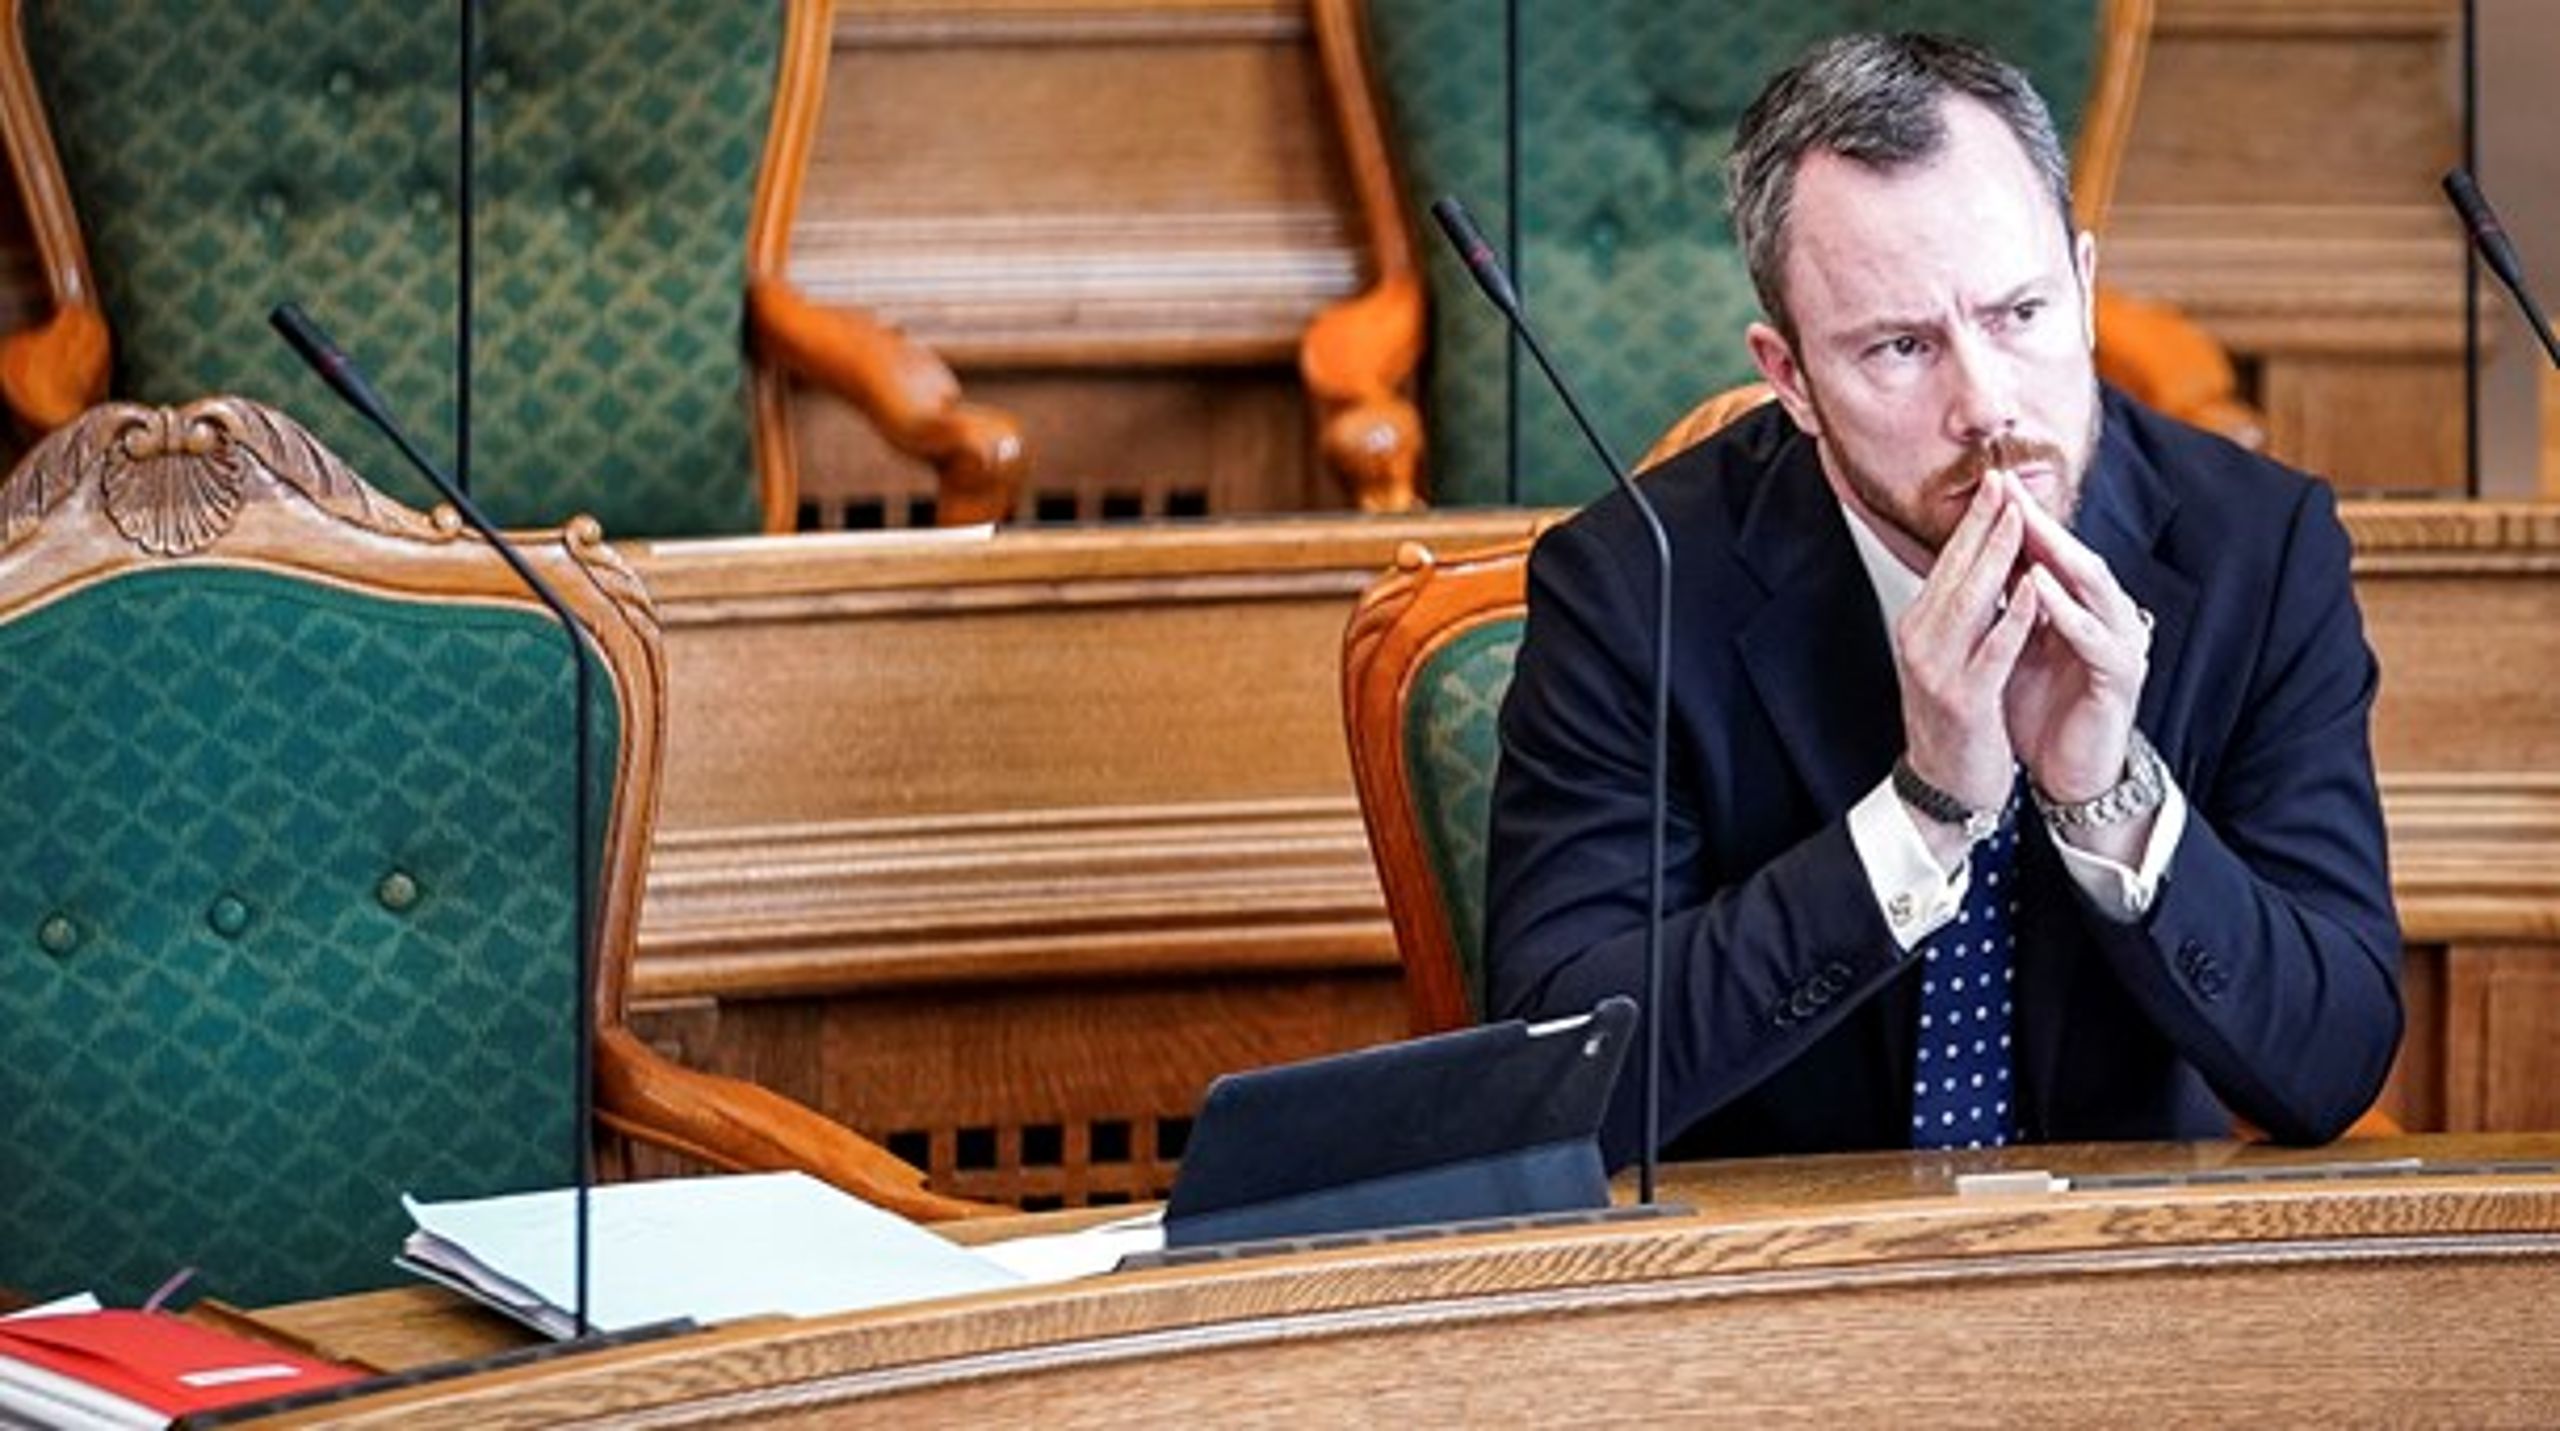 Jakob Ellemann-Jensen (V) og Venstre vil sikre kommunerne flere penge og undgå skattestigninger, hvis de skal indgå en aftale om den kommunale udligningsordning med regeringen.